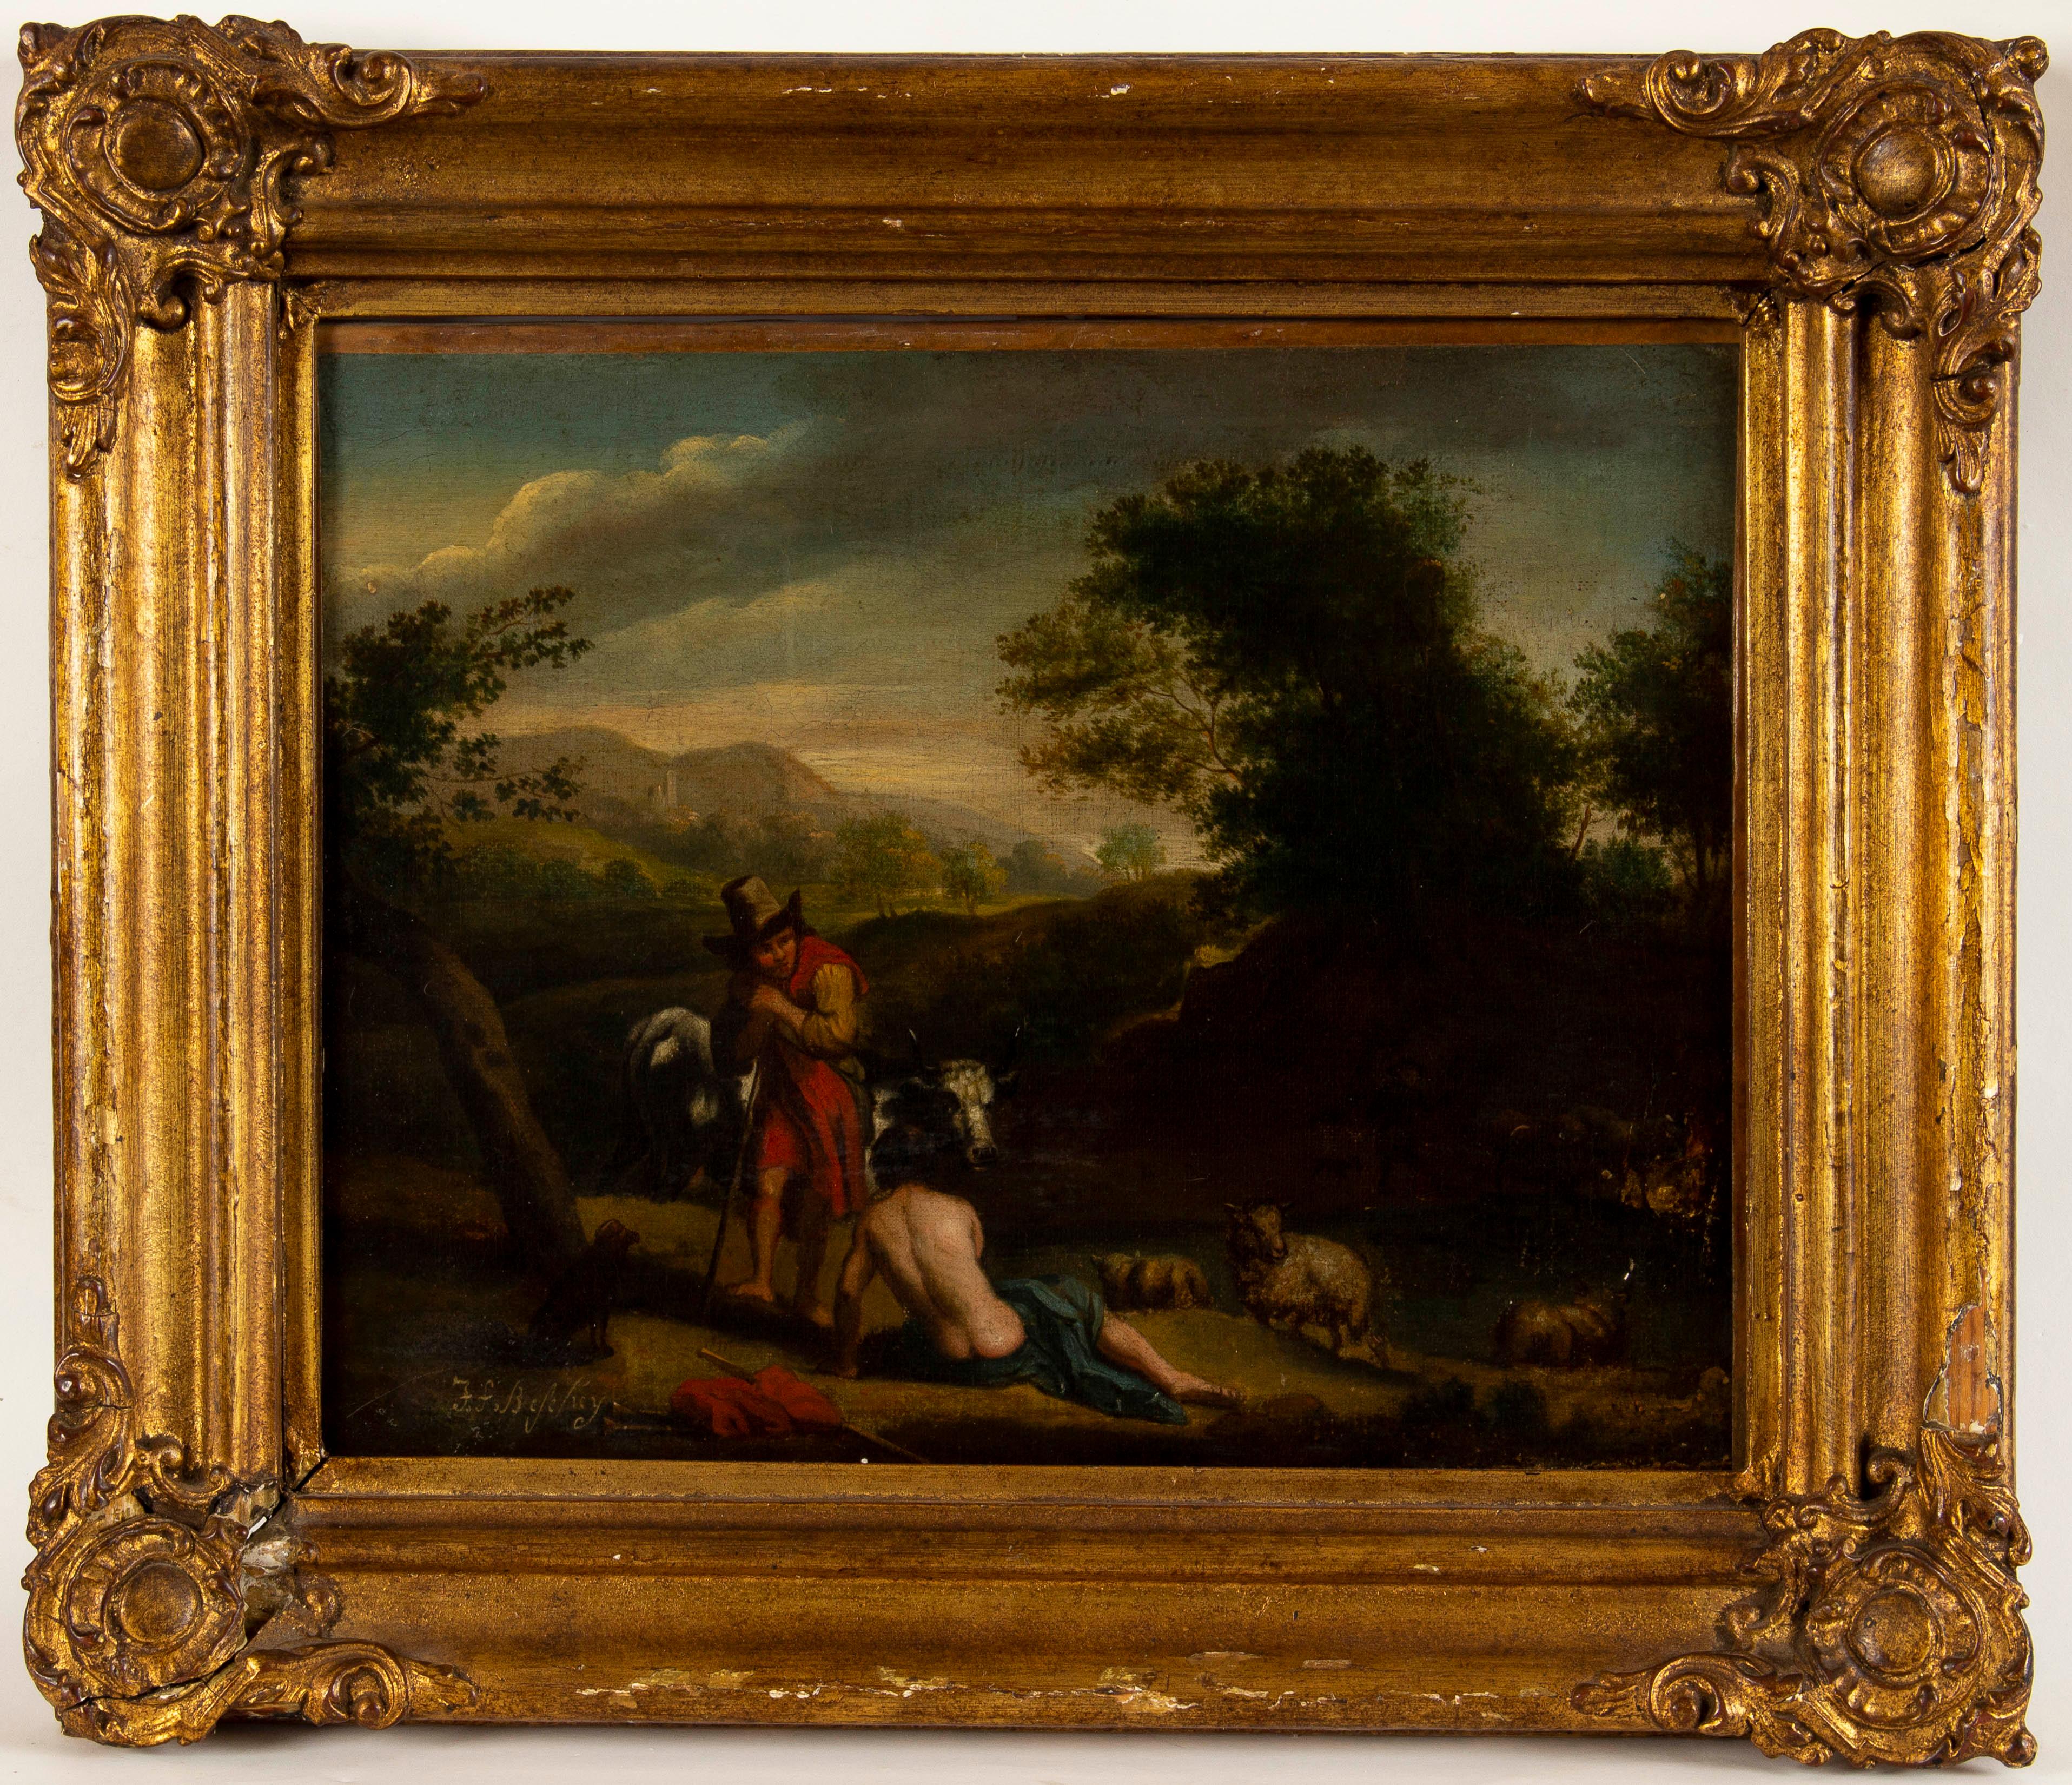 Exquise scène d'Arcadia Antiques avec bergers, par le peintre flamand Jan Frans Beschey (Anvers, 1717-1786).
Signé en bas à gauche : J. F. Beschey
Dans un cadre ancien en bois sculpté.
Taille du filet : 30,5 x 36,5 cm
Dimensions avec cadre : 42 x 49